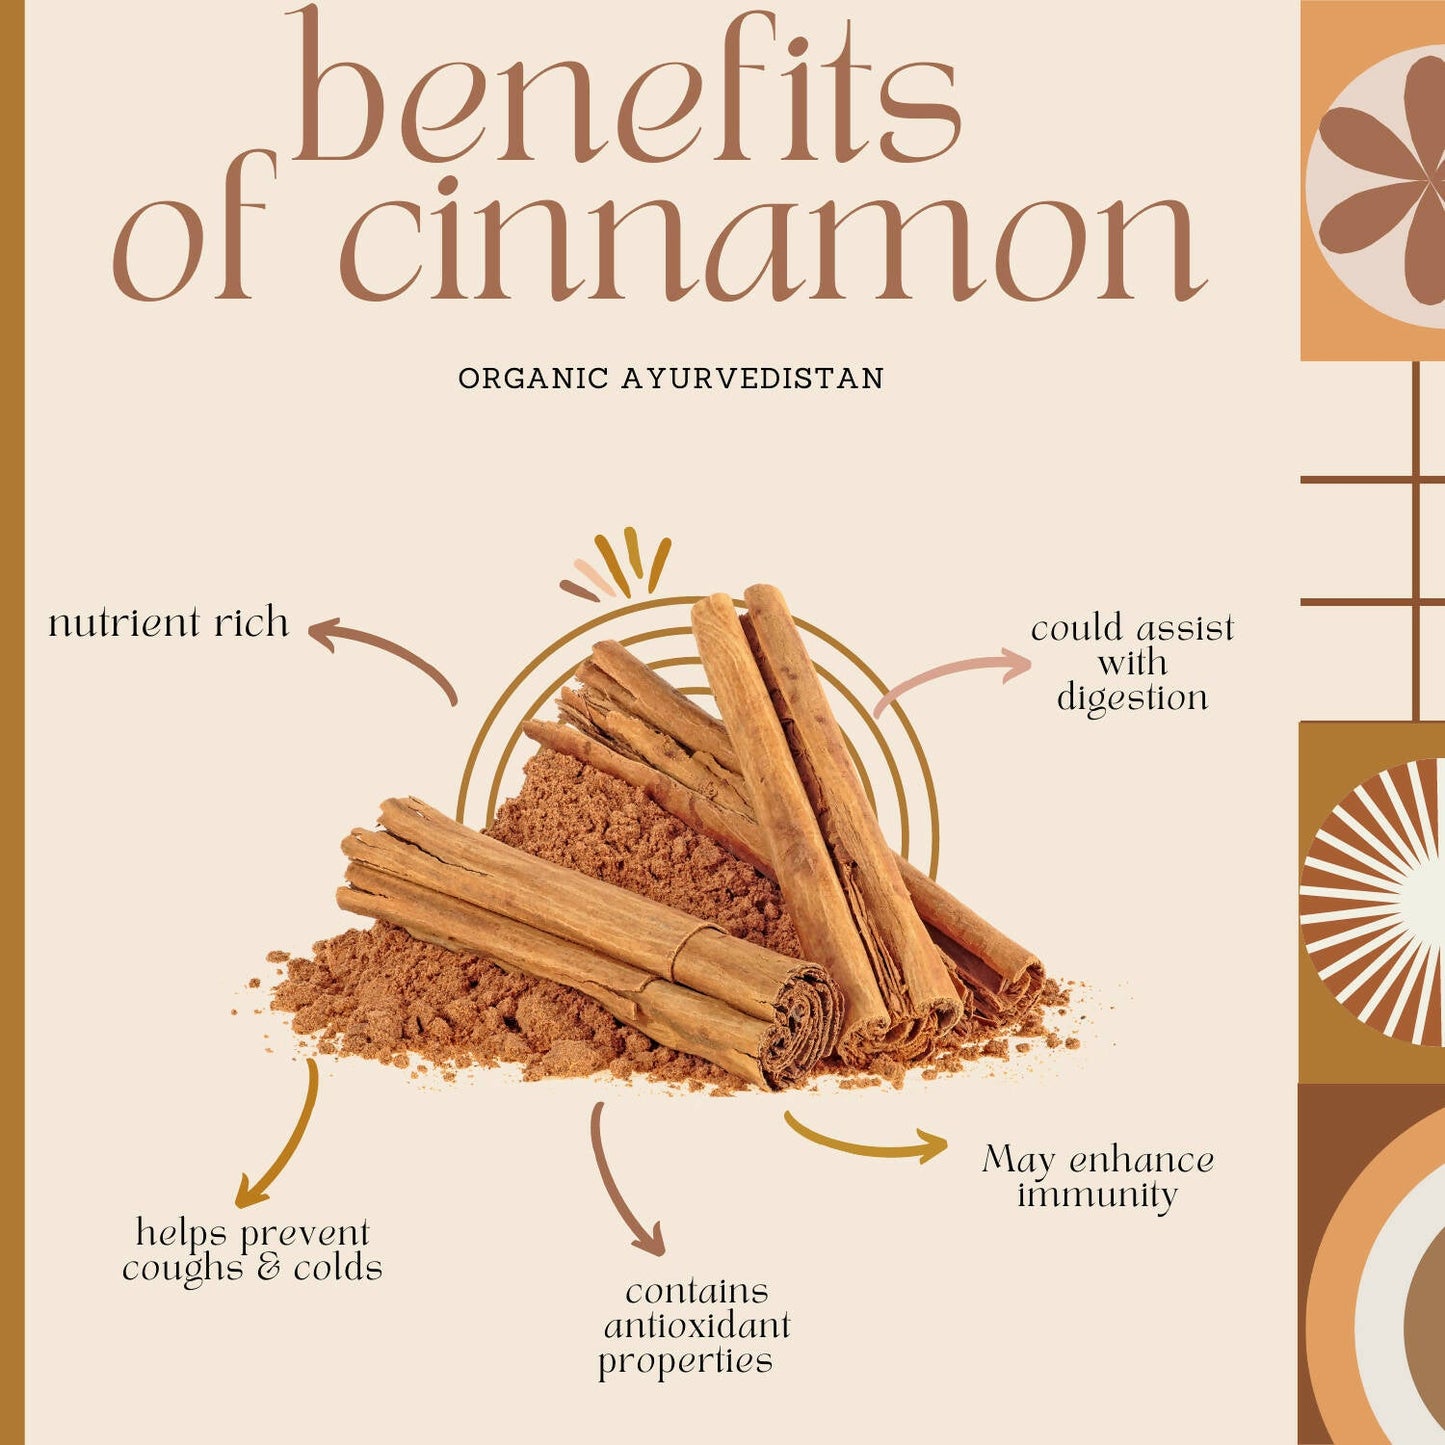 Organic Ayurvedistan Ceylon Cinnamon Sticks